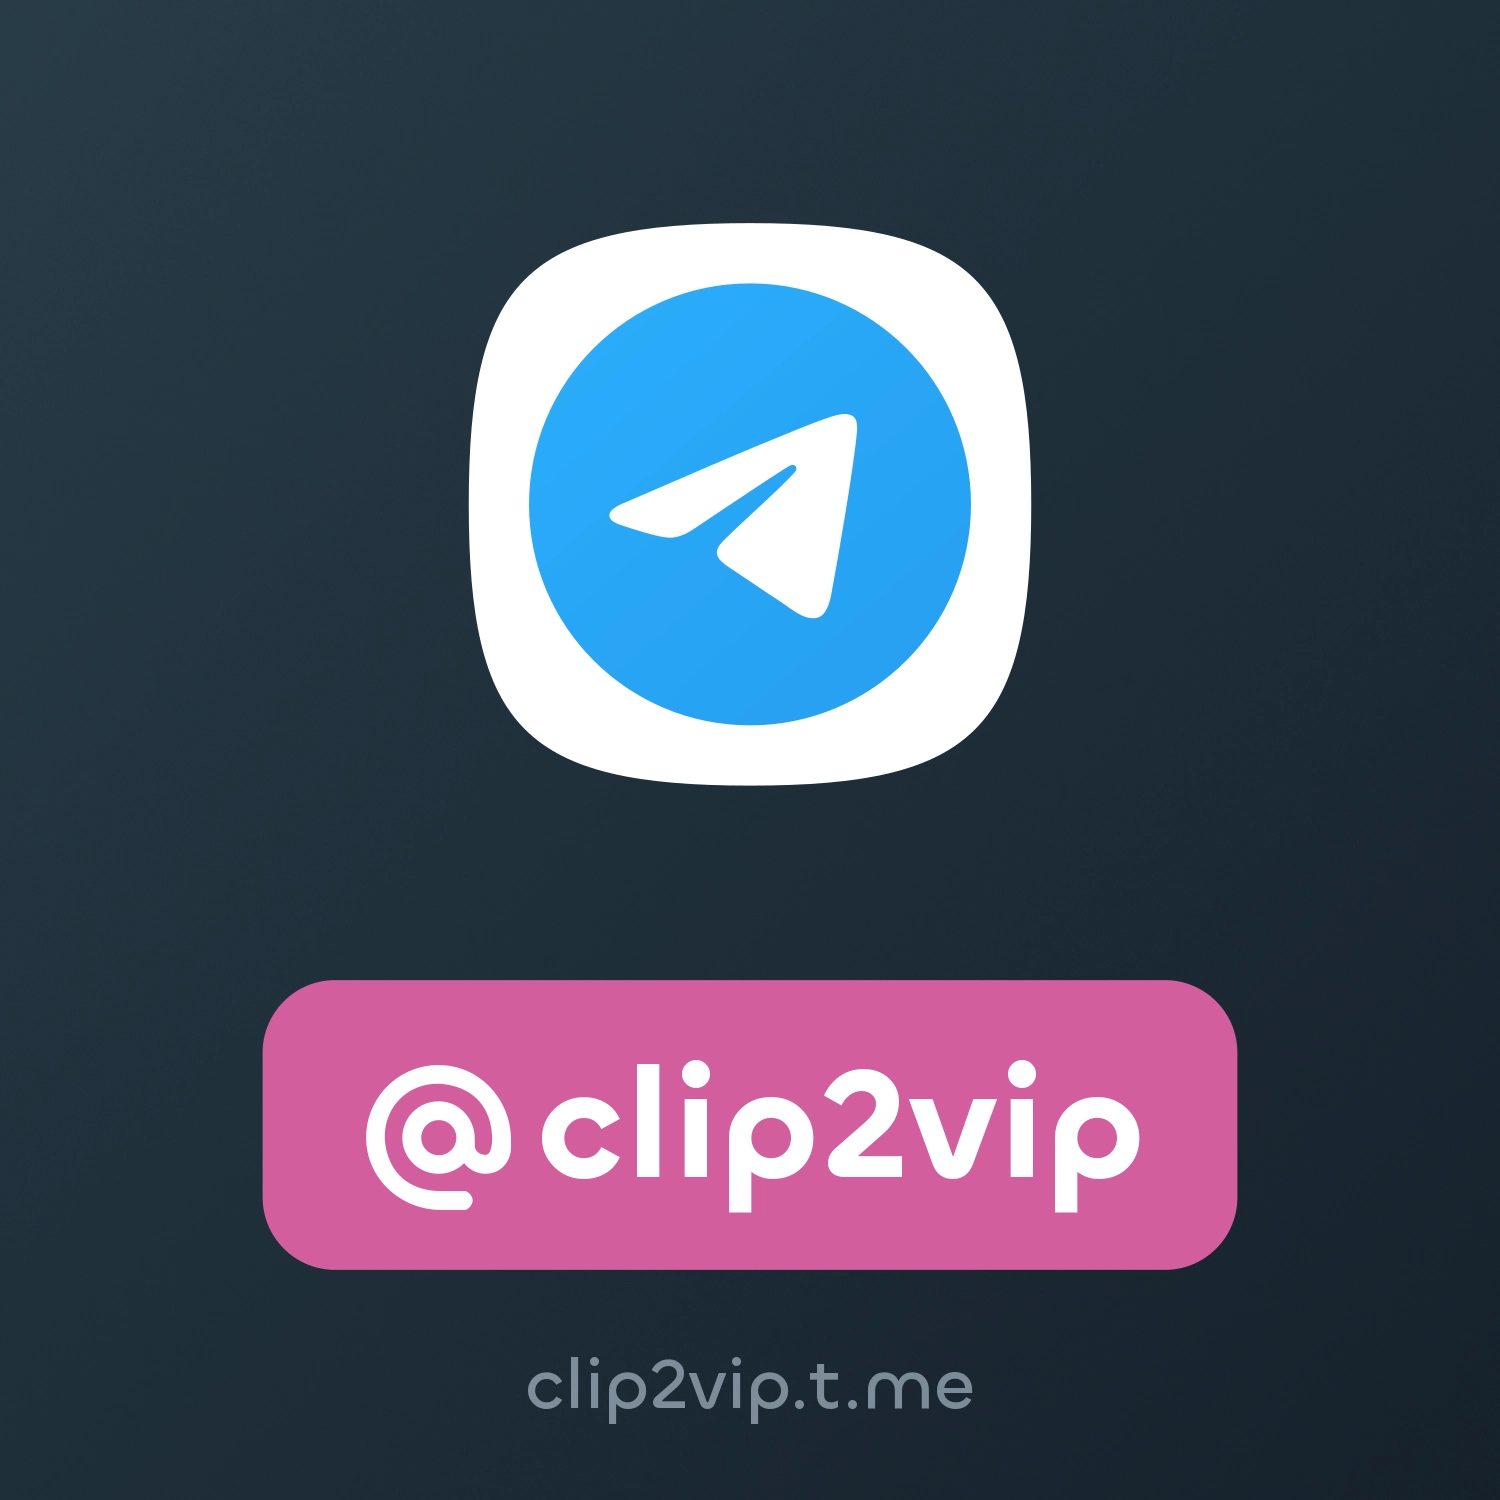 Clip2vip